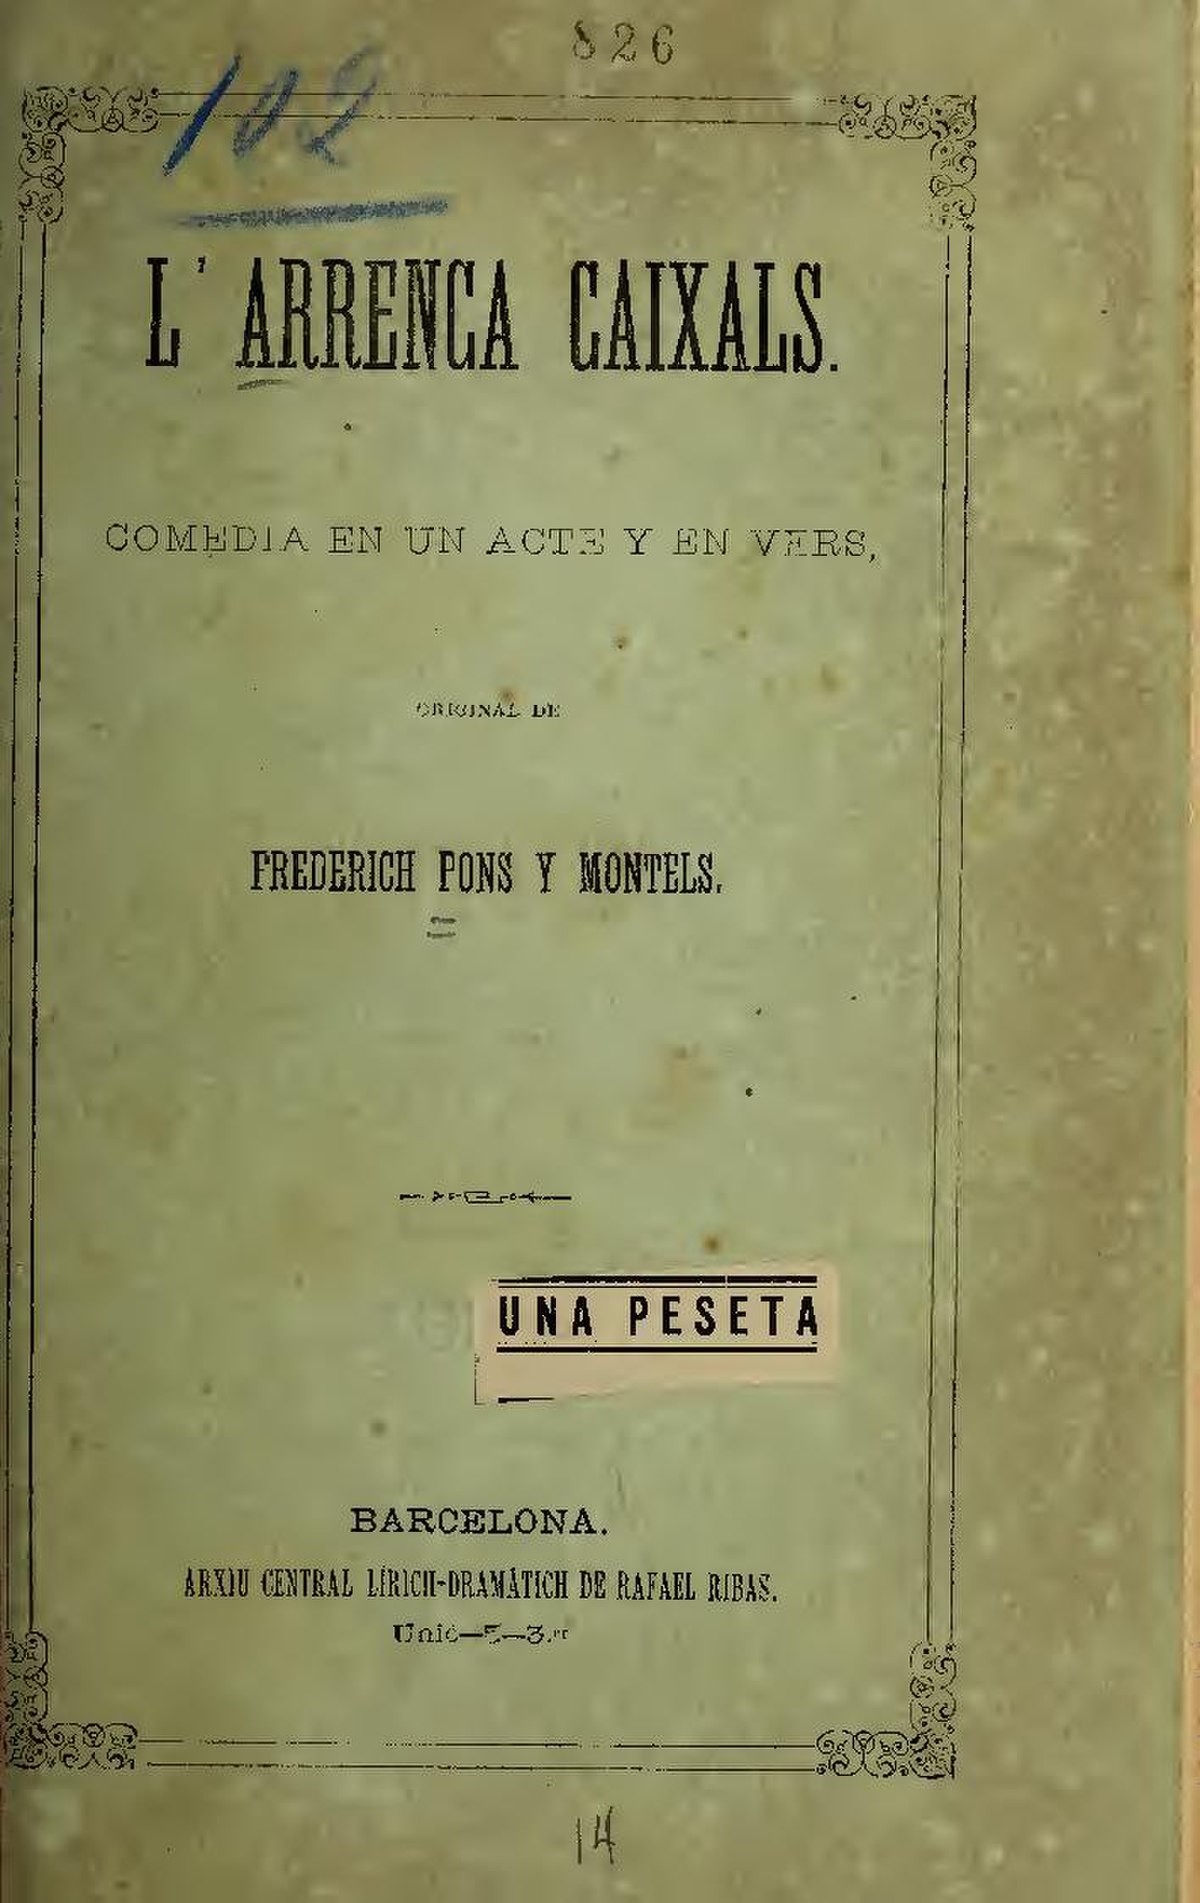 File L Arrenca Caixals Comedia En Un Acte Y En Vers Ia Larrencacaixalsc457pons Pdf Wikimedia Commons